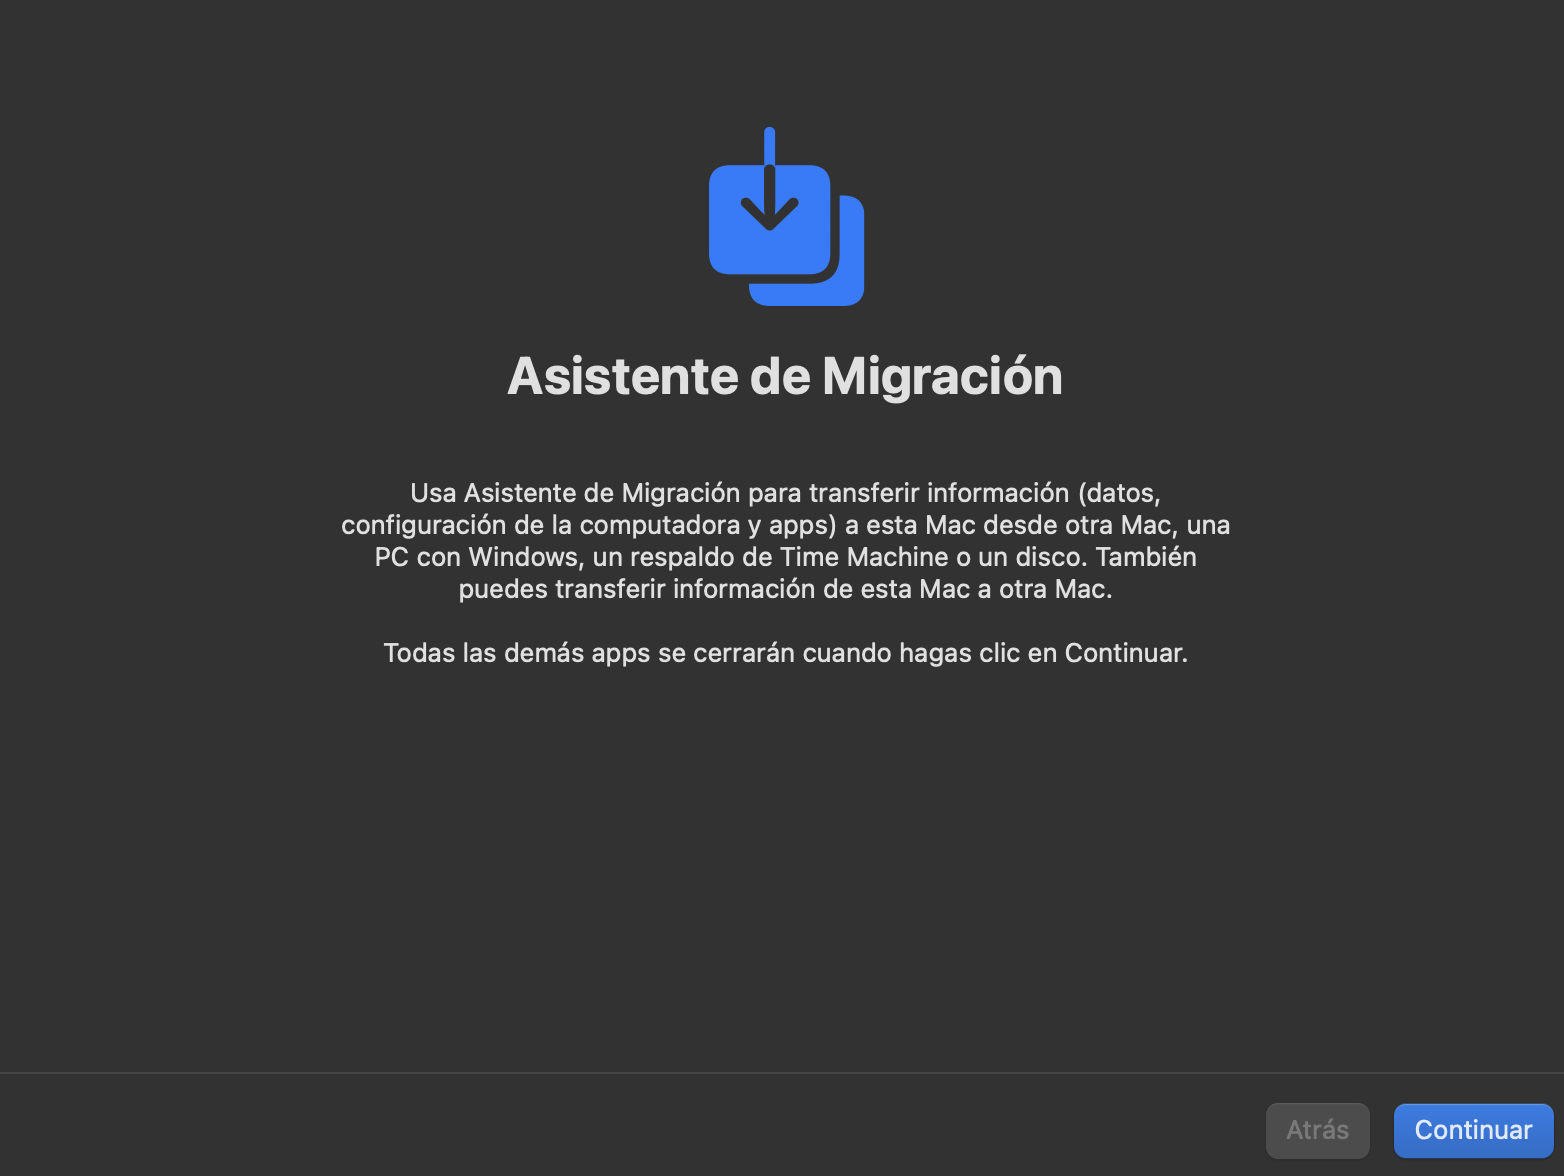 Asistente de Migración de Mac